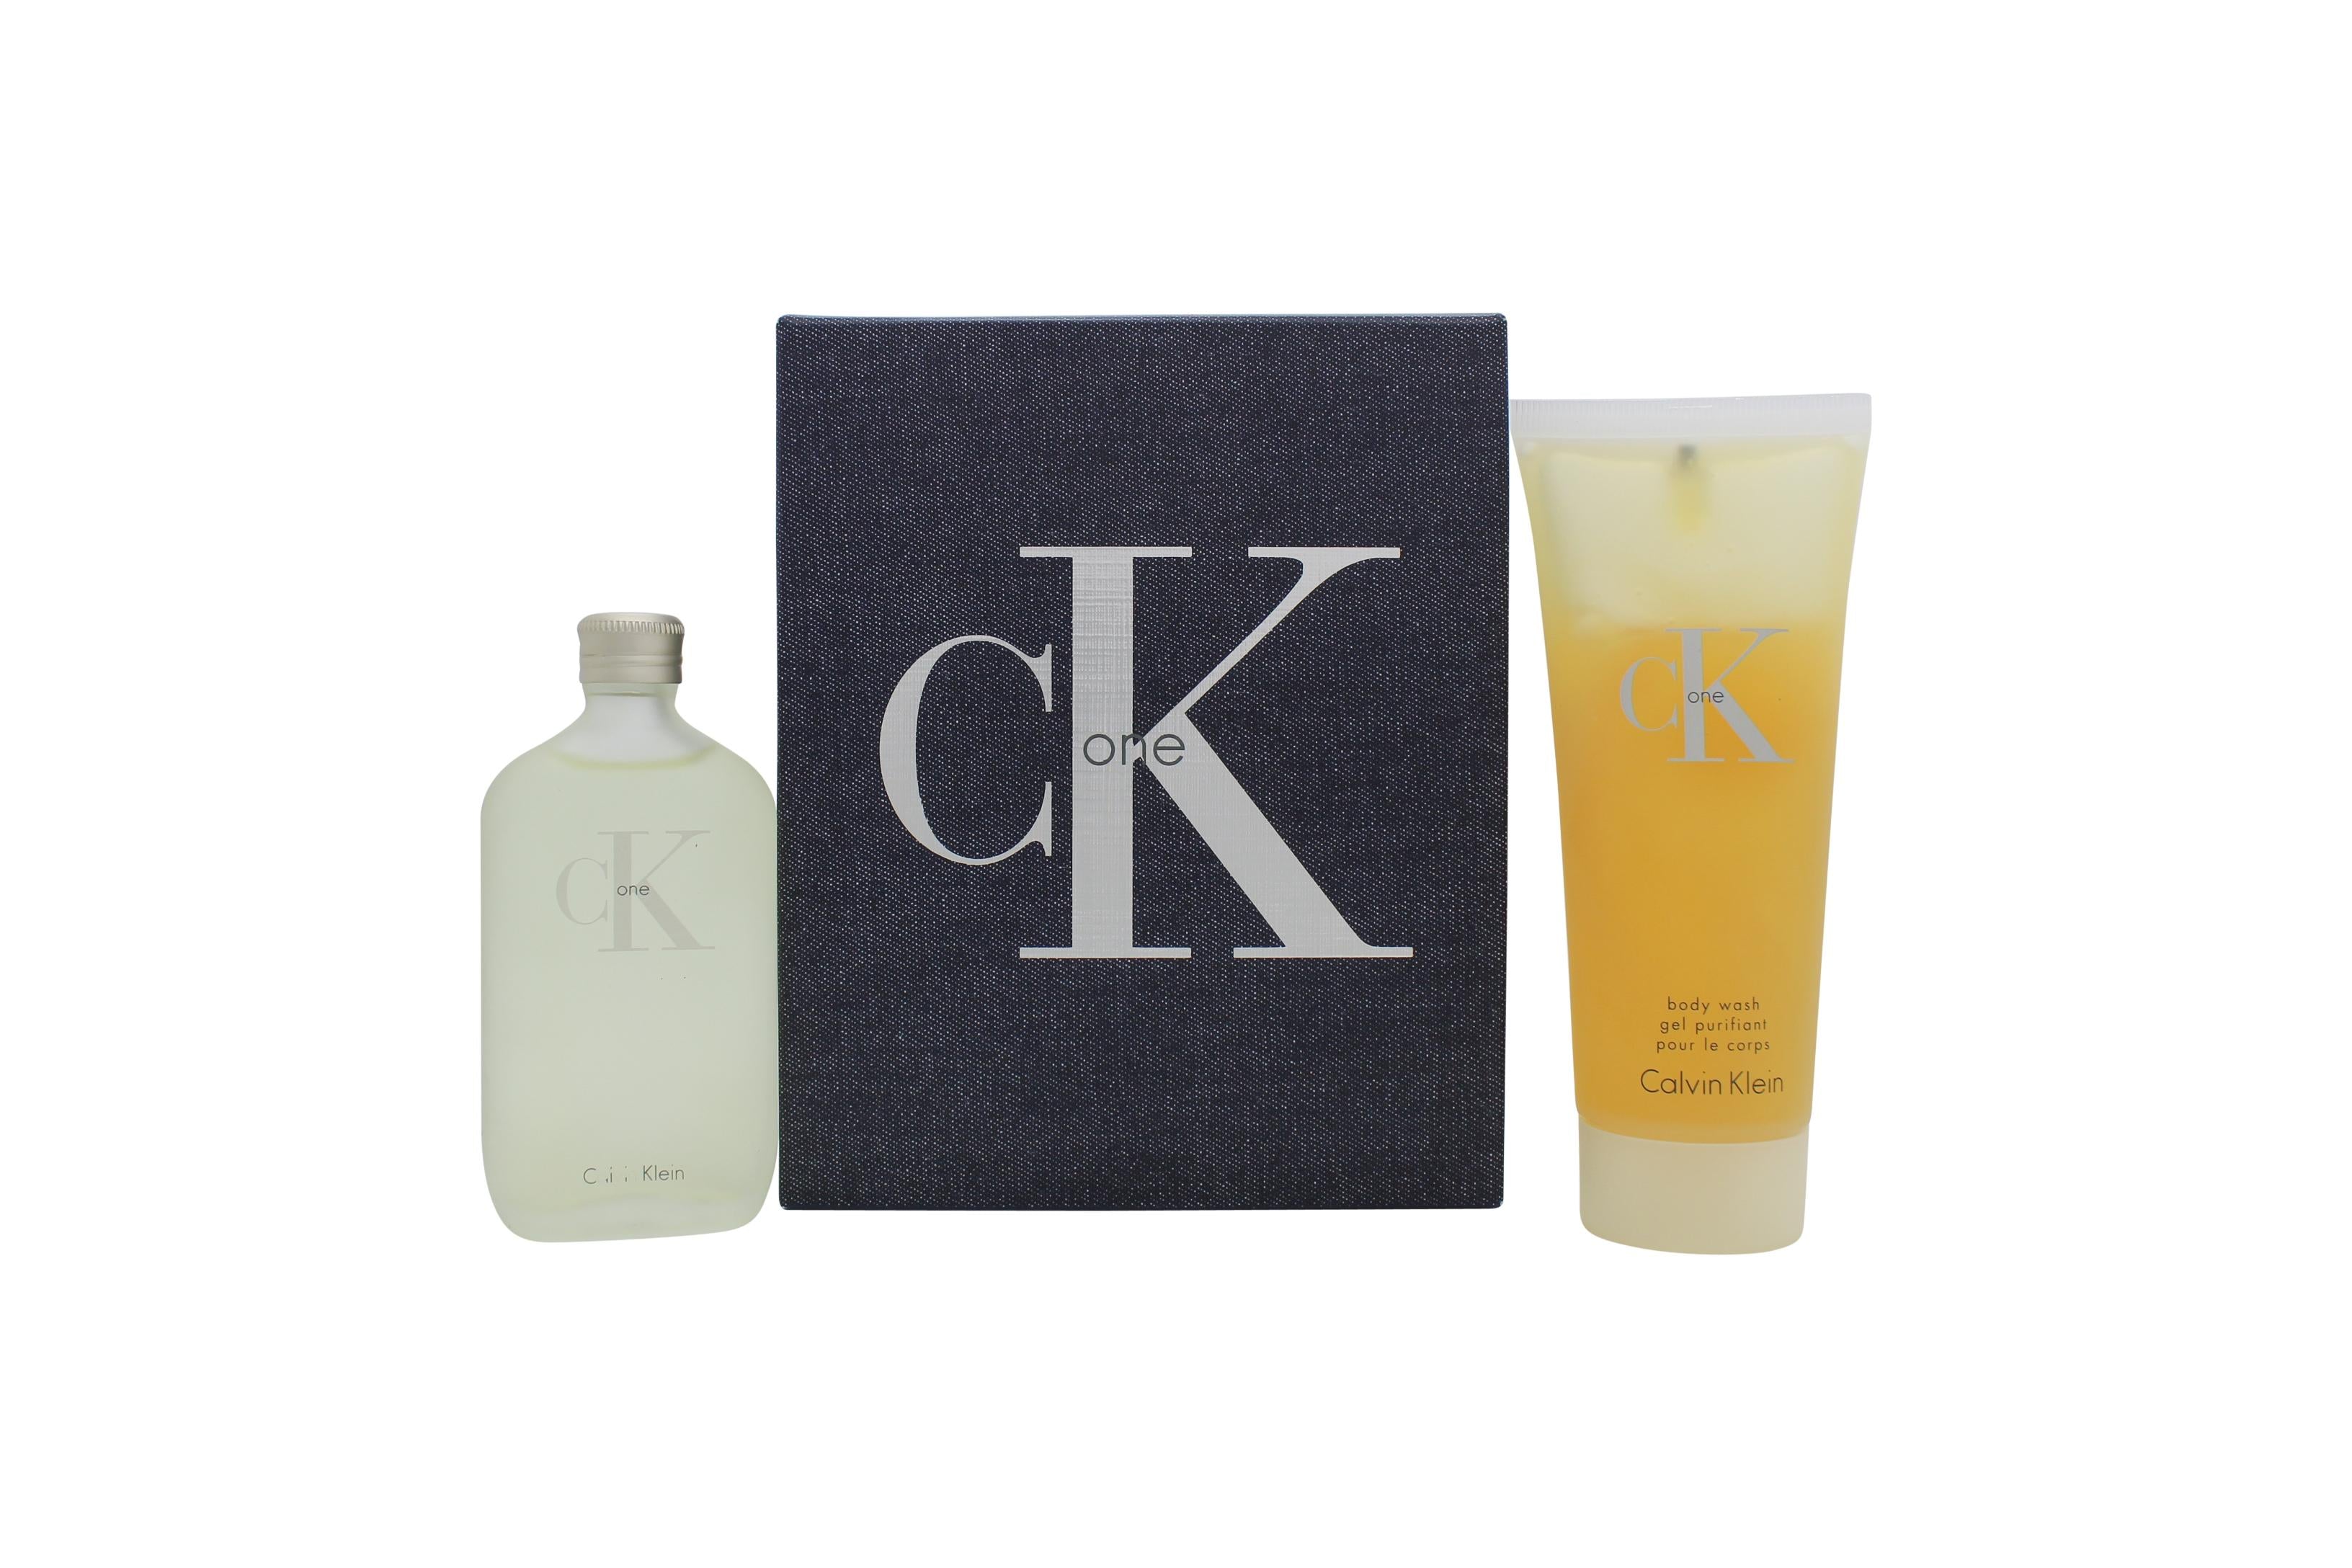 View Calvin Klein CK One Gift Set 50ml EDT 100ml Body Wash information